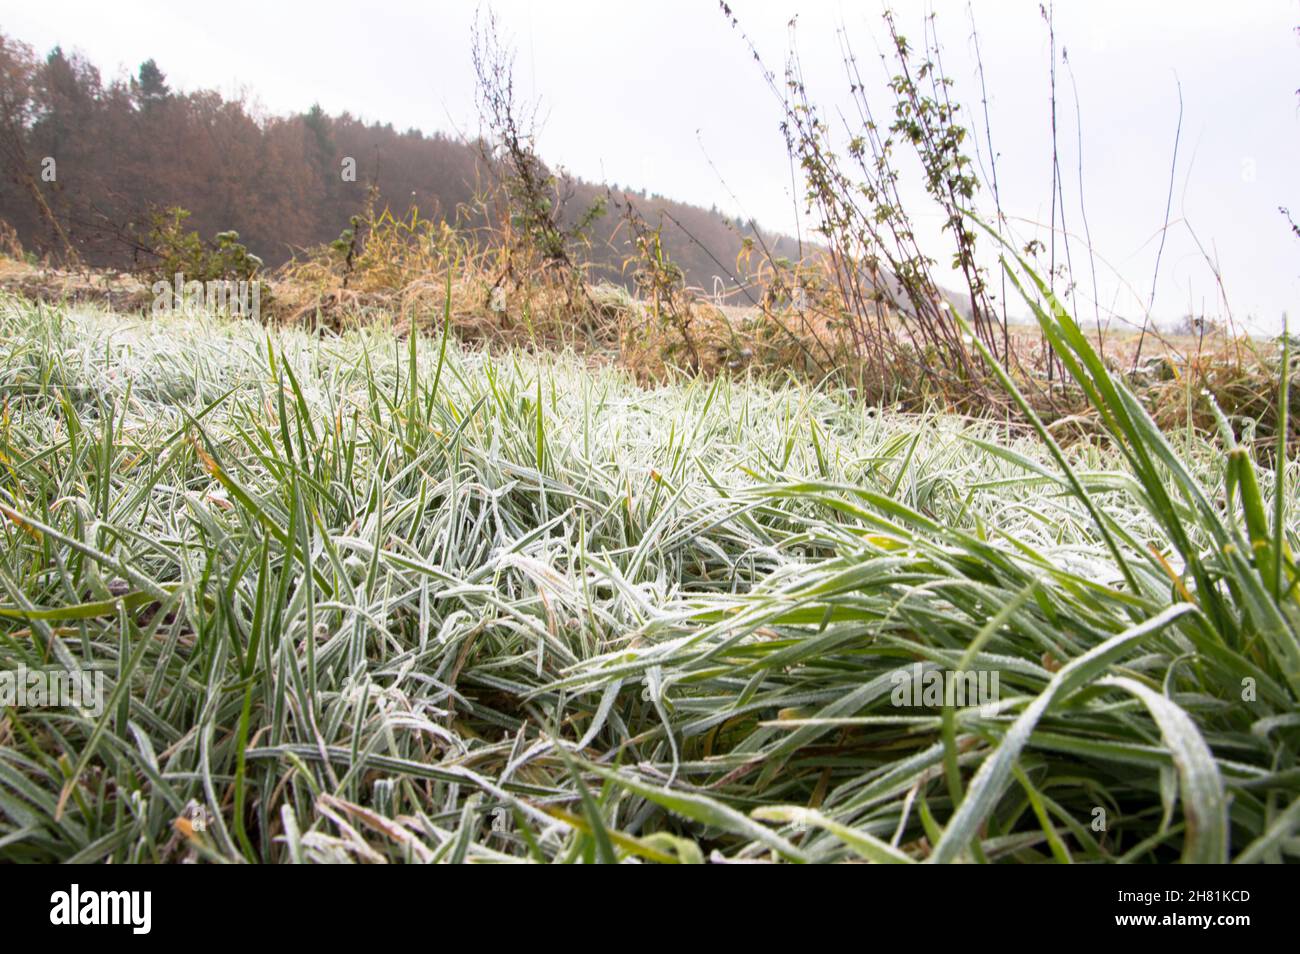 die Kalte Jahreszeit beginnt mit Frost und Eis Bäume und felder werden weiß. Stock Photo